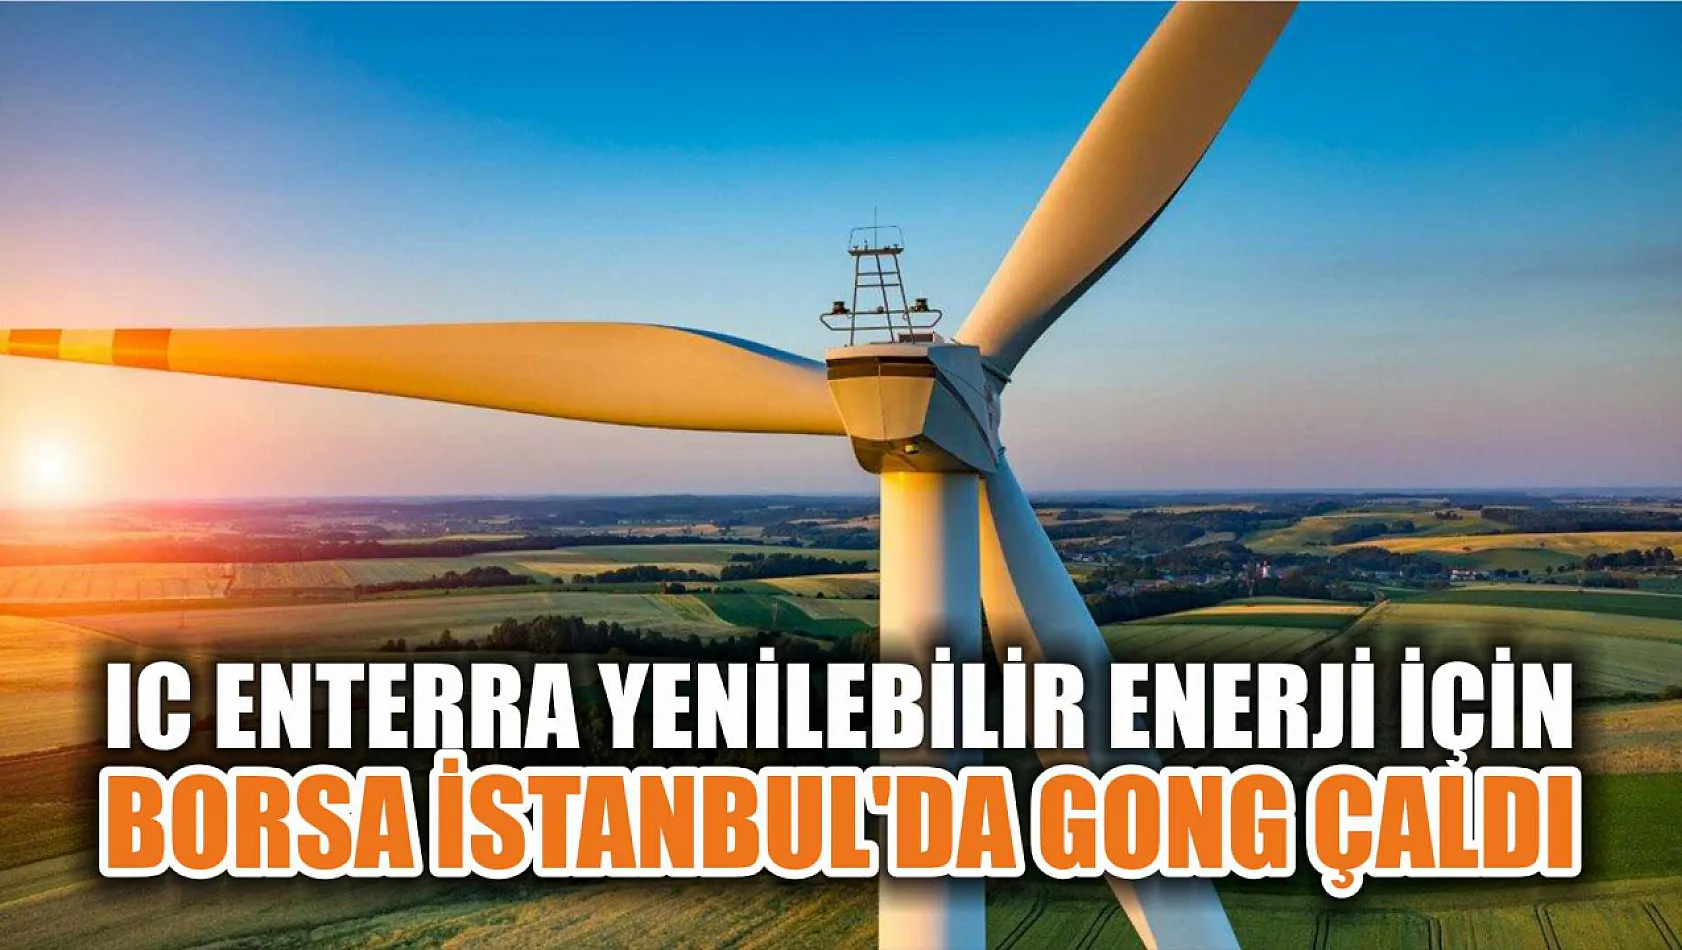 IC Enterra Yenilebilir Enerji için Borsa İstanbul'da gong çaldı